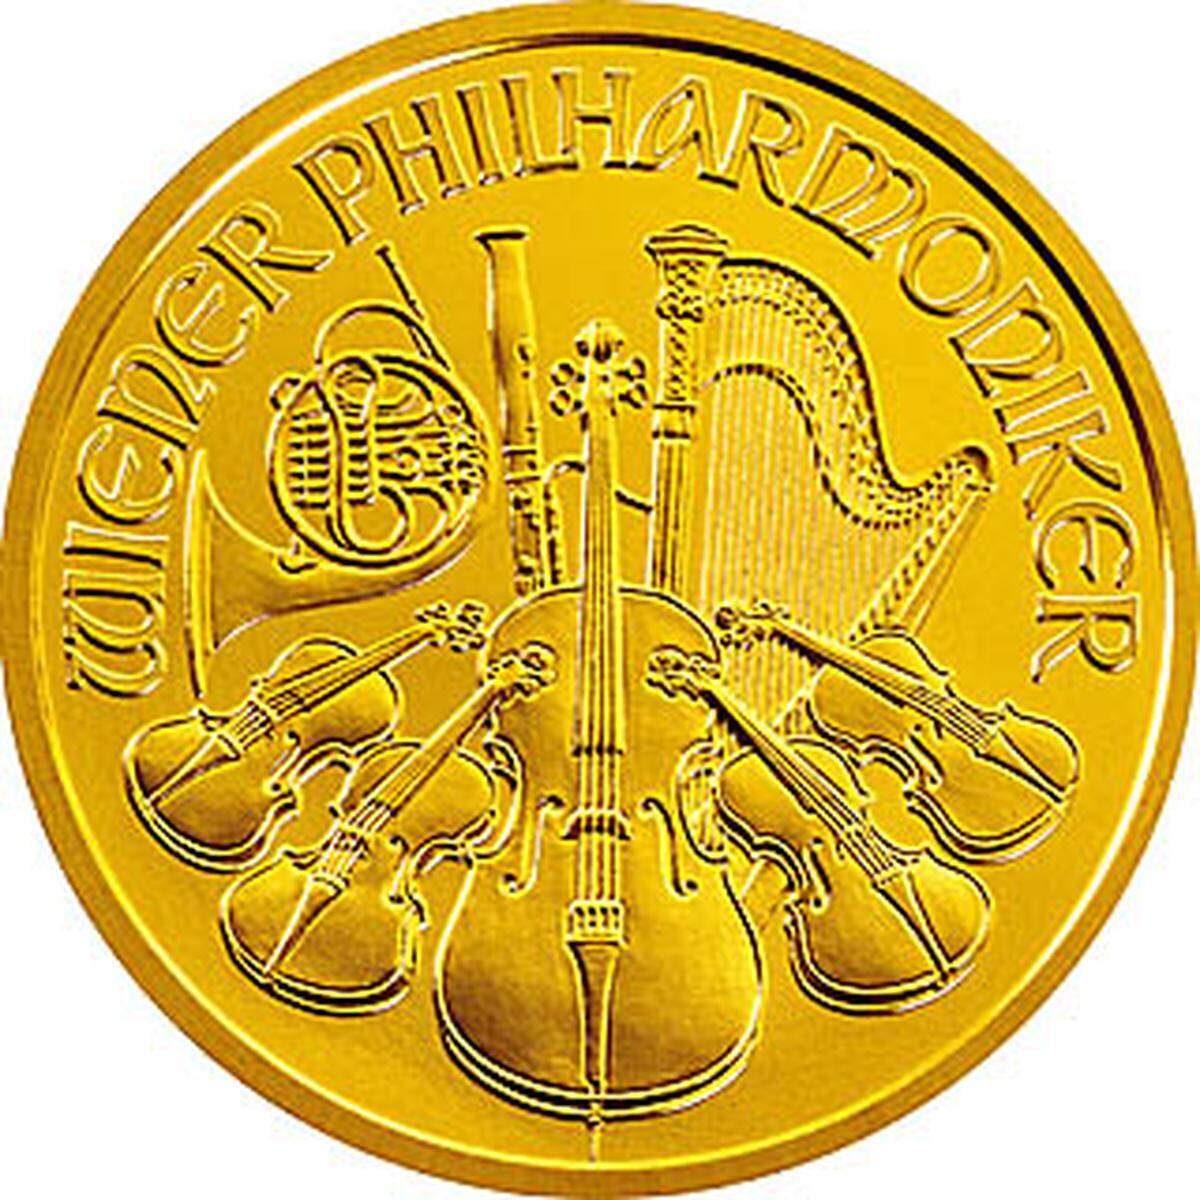 Der große Philharmoniker (eine Unze, 31,103 Gramm Feingewicht) hat einen Nennwert von 100 Euro. Er dürfte aber recht selten im Supermarkt als Hunderter verwendet werden - denn allein der Materialwert schwankt gemeinsam mit dem Goldpreis rund um 1000 Euro.